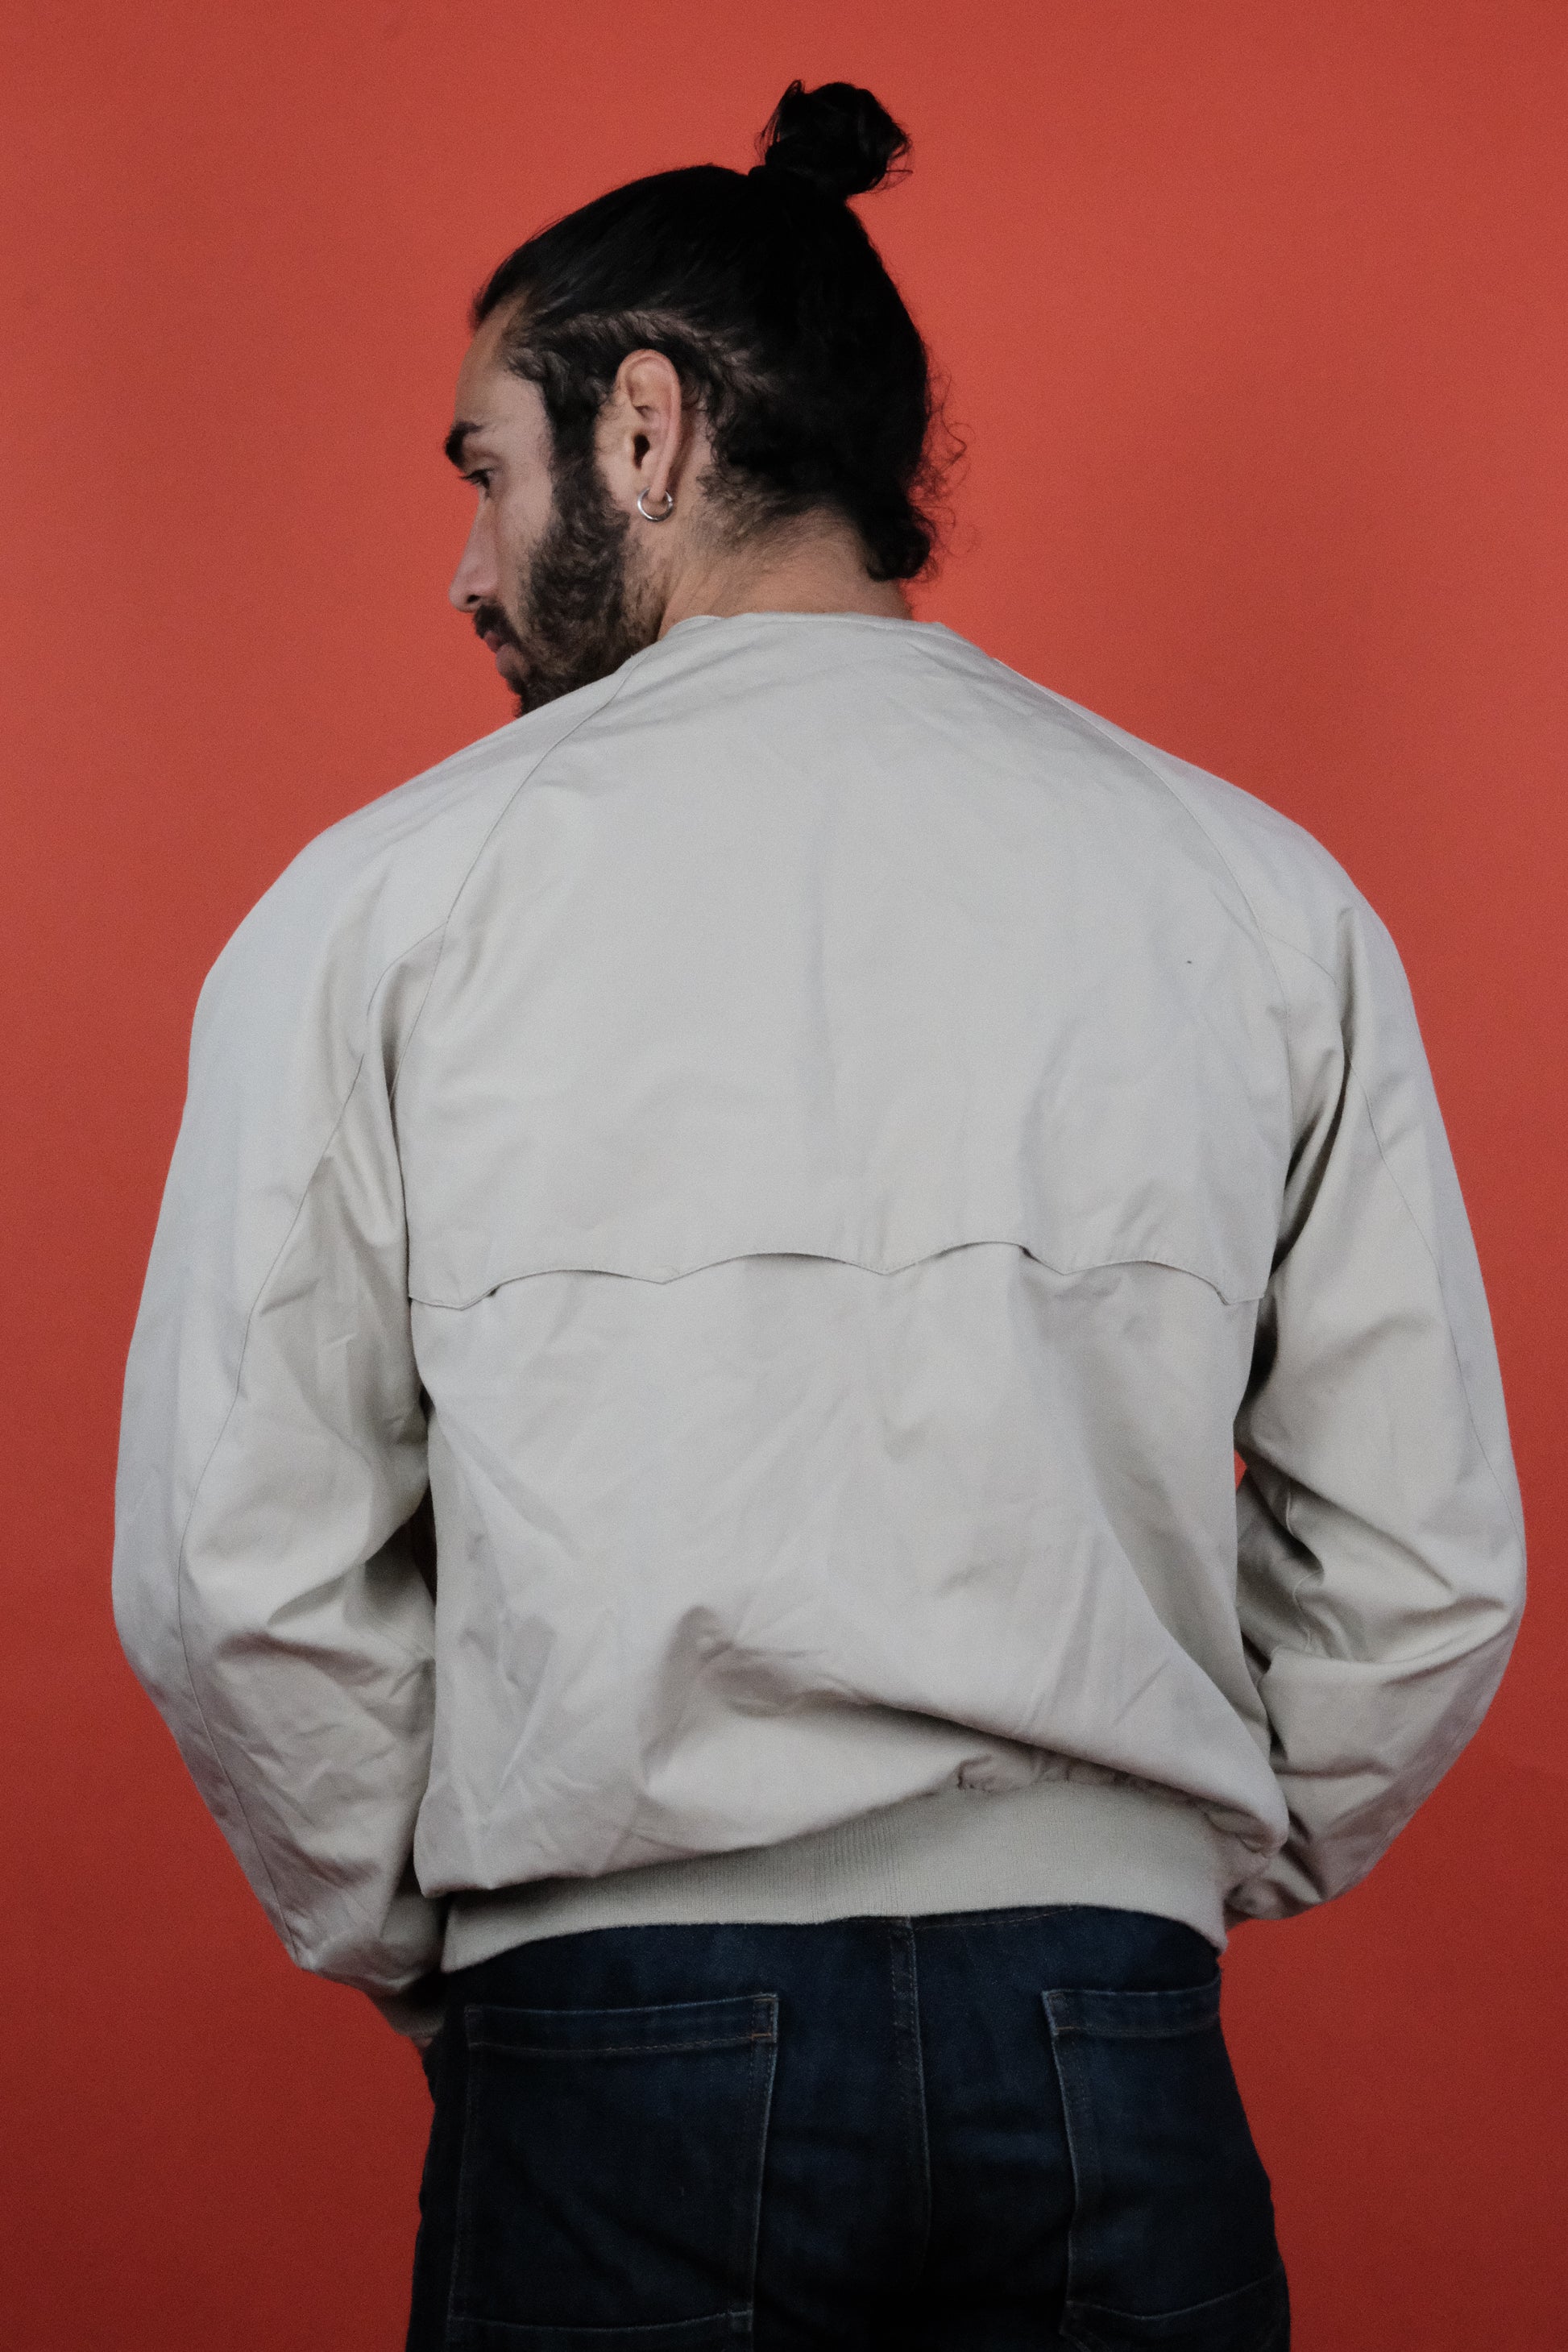 Lacoste Beige Cotton Jacket 'M' - vintage clothing clochard92.com